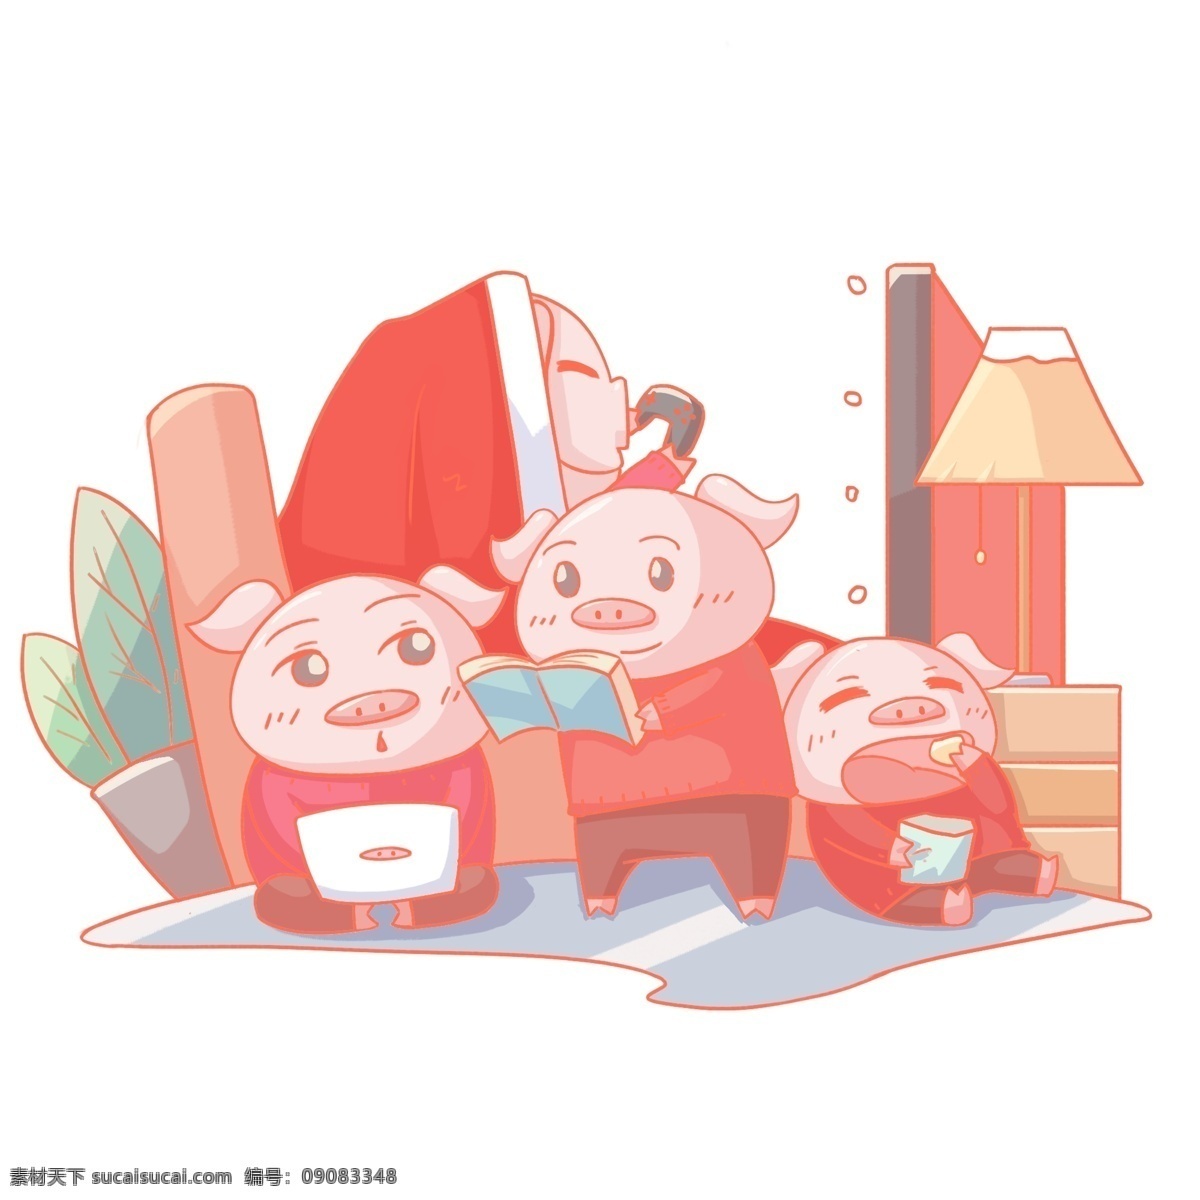 2019 农历 新年 猪年 宅 家 小 猪 猪年大吉 新年快乐 人物 休闲 放松 在家 卡通手绘风格